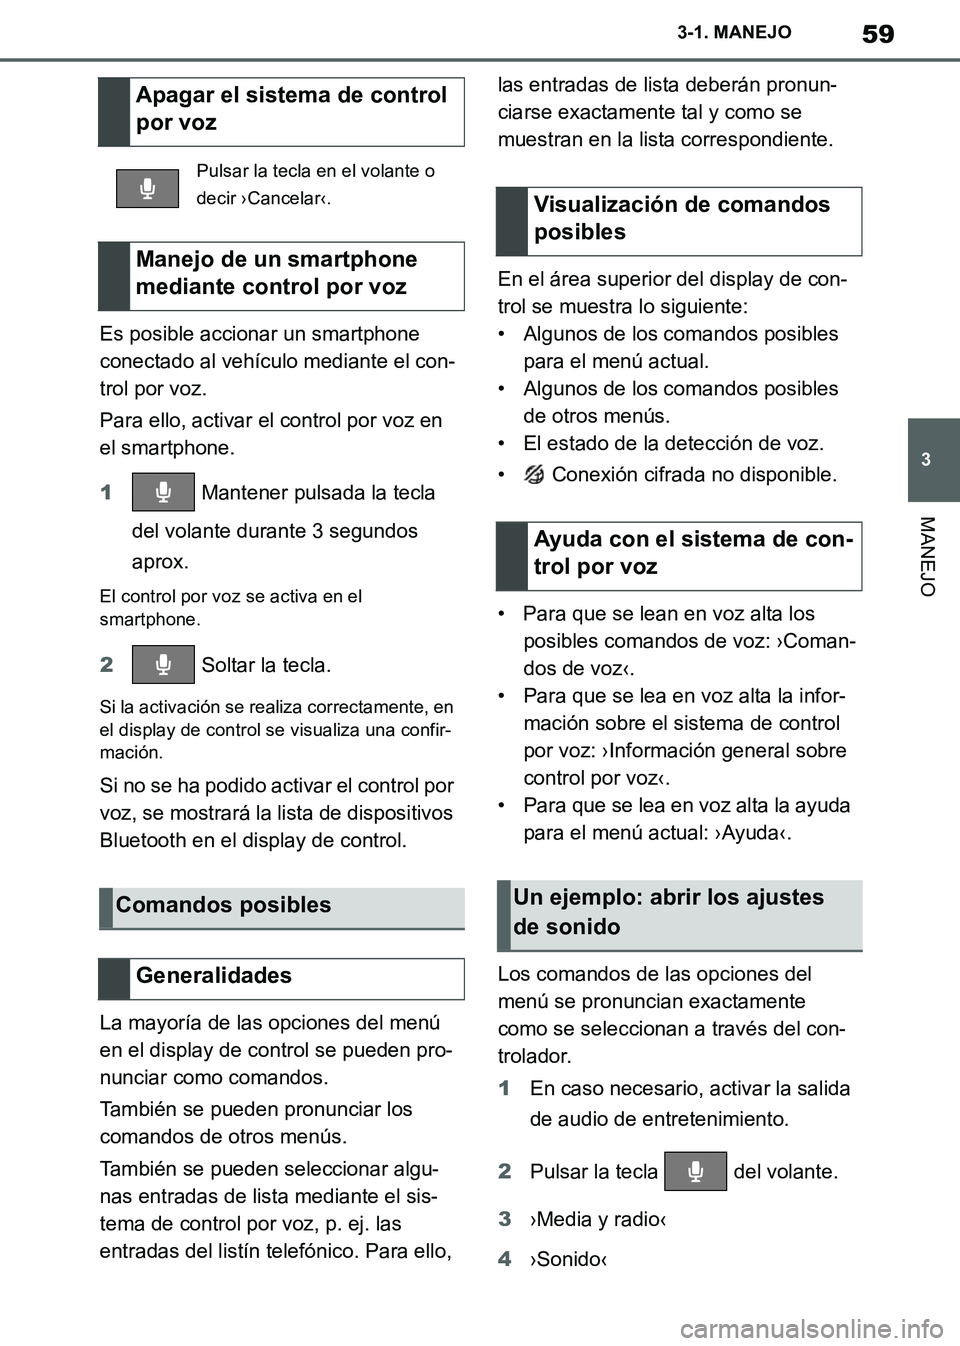 TOYOTA SUPRA 2019  Manuale de Empleo (in Spanish) 59
3
Supra Owners Manual_ES
3-1. MANEJO
MANEJO
Es posible accionar un smartphone 
conectado al vehículo mediante el con-
trol por voz.
Para ello, activar el control por voz en 
el smartphone.
1 Mant